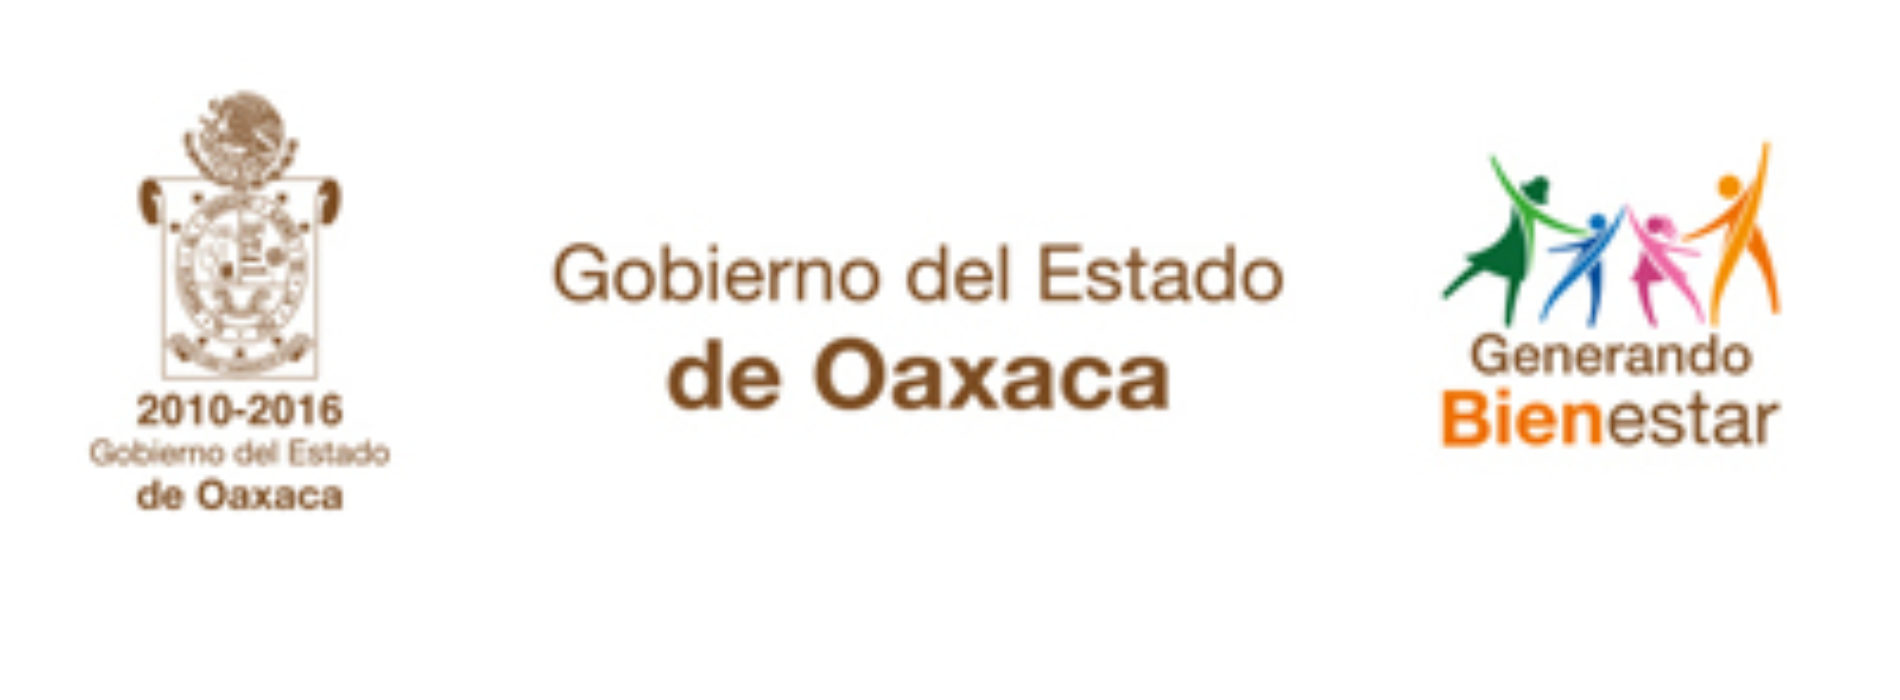 Atiende Gobierno de Oaxaca emergencia en La Soledad, Mesones Hidalgo